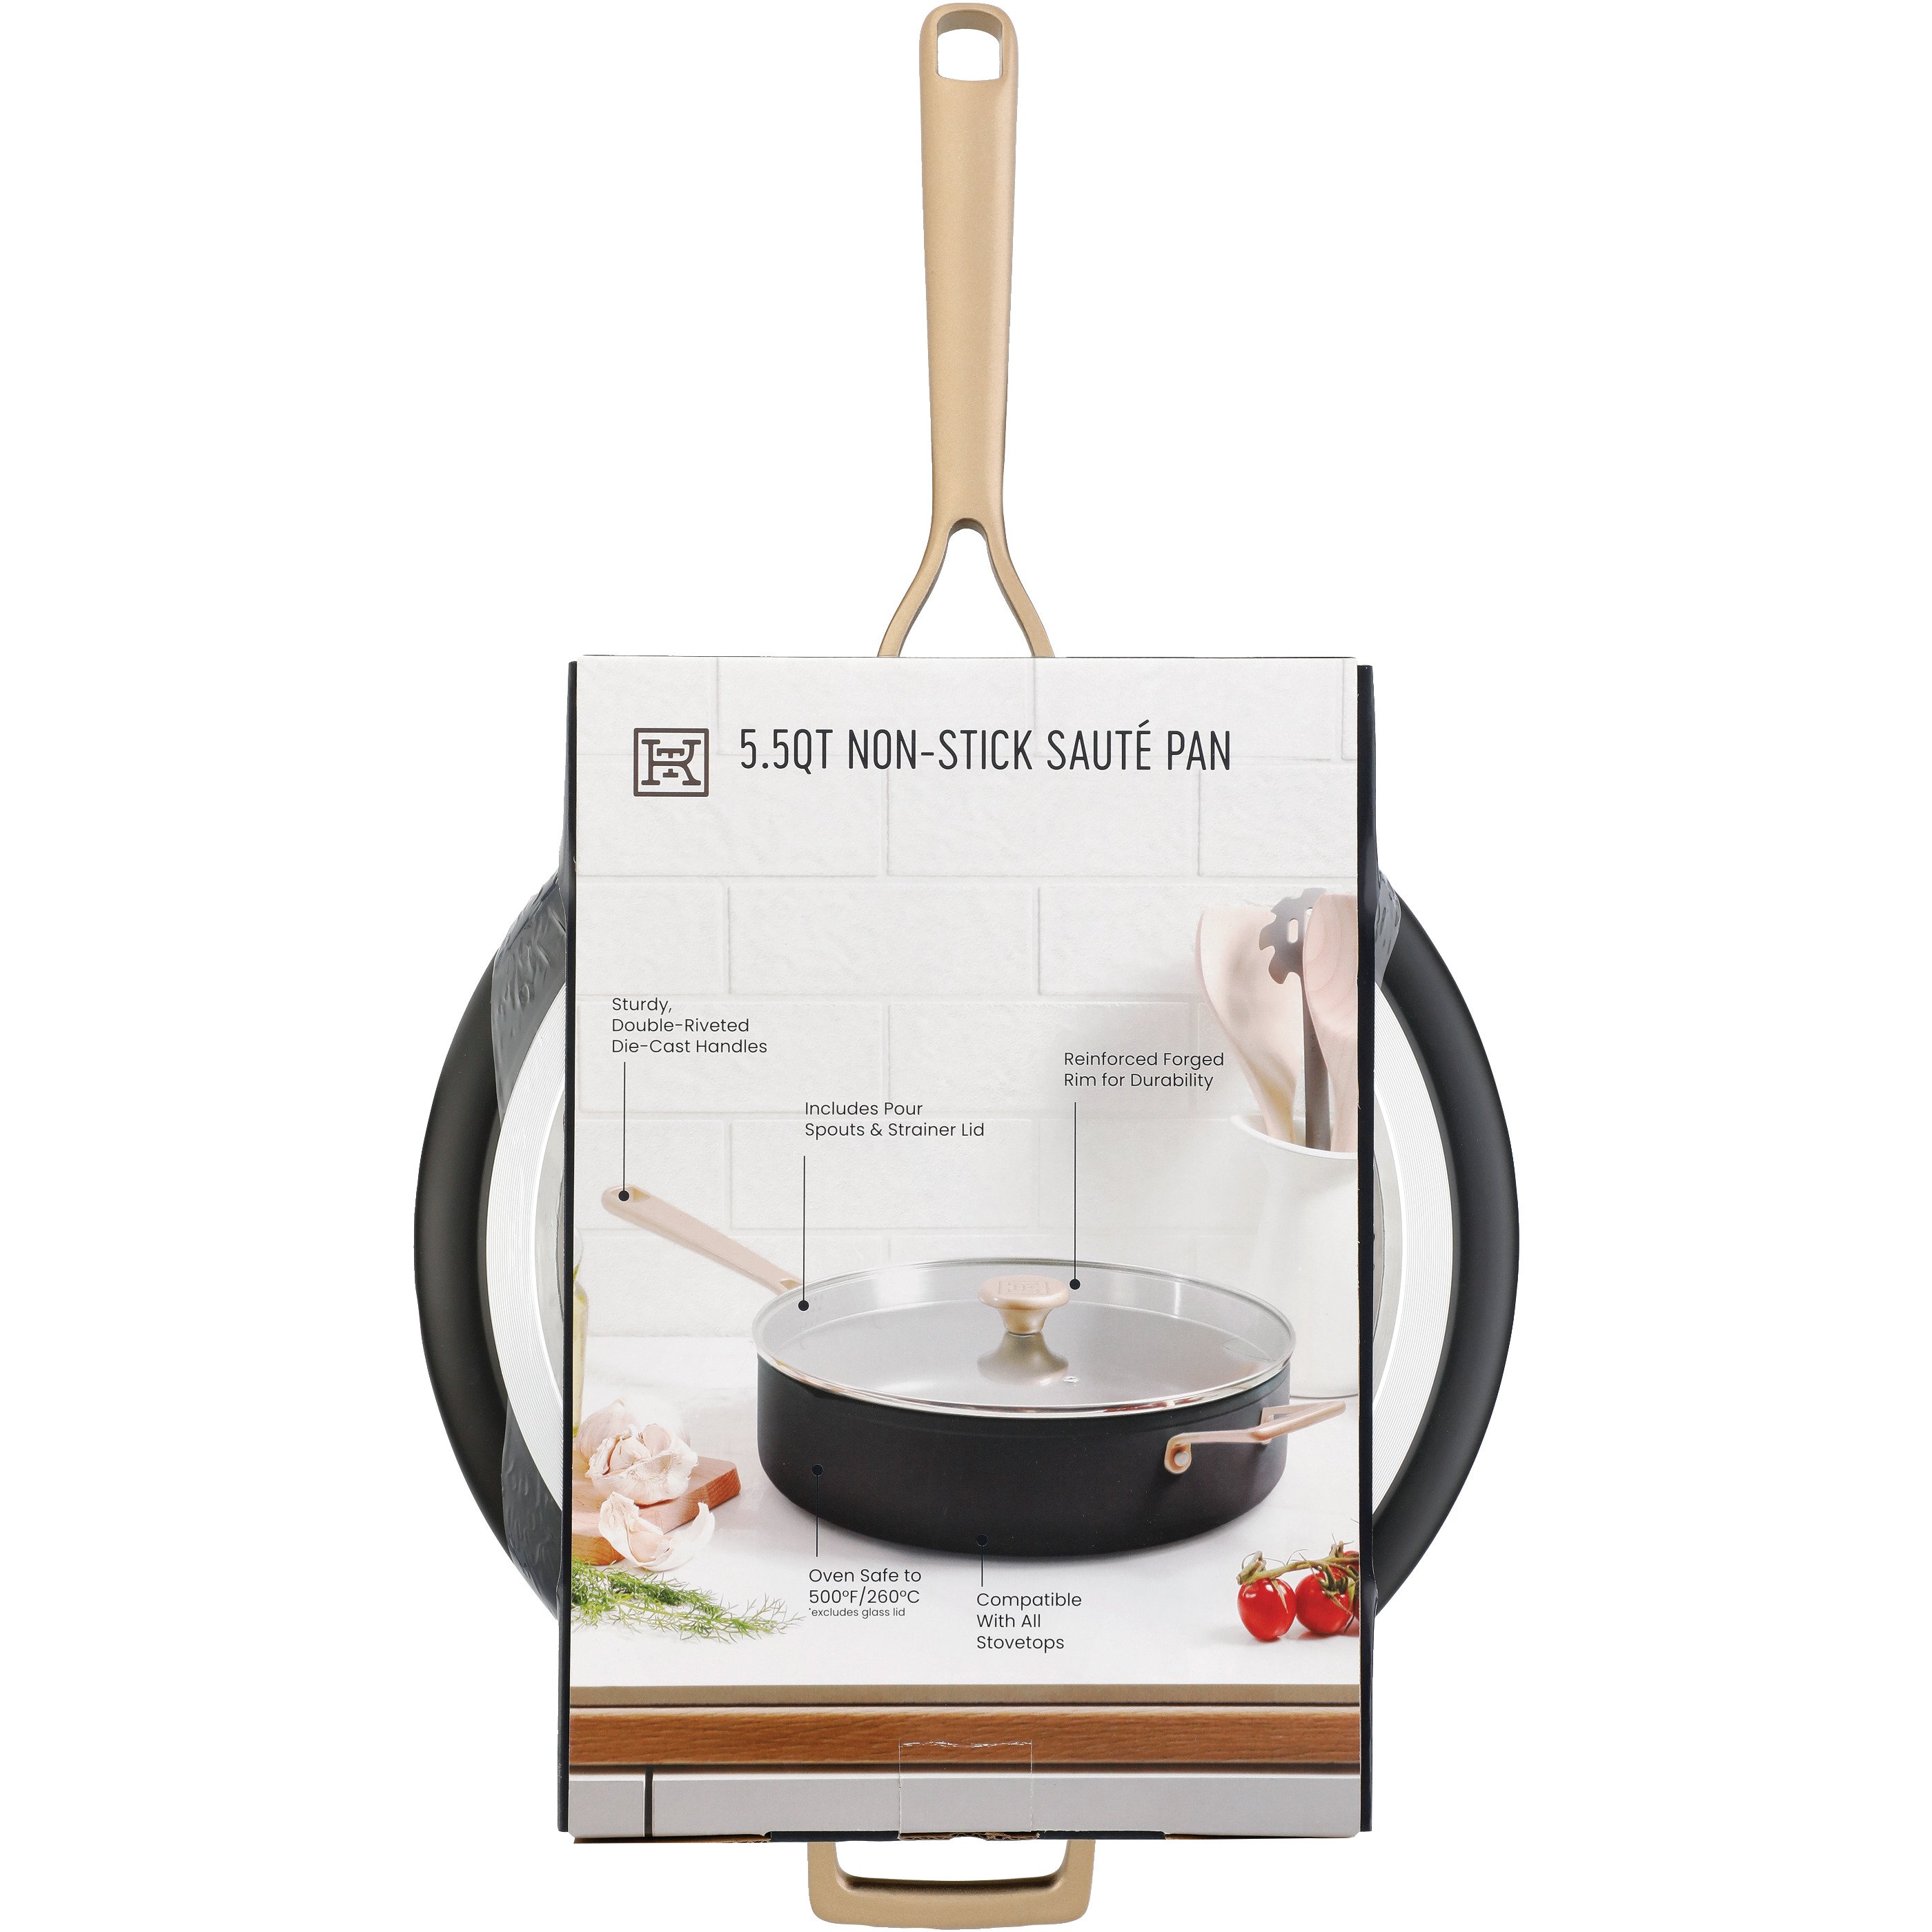  Berndes Tradition Non-Stick Sauté Pan with Glass Lid  4.25-Quart: Home & Kitchen